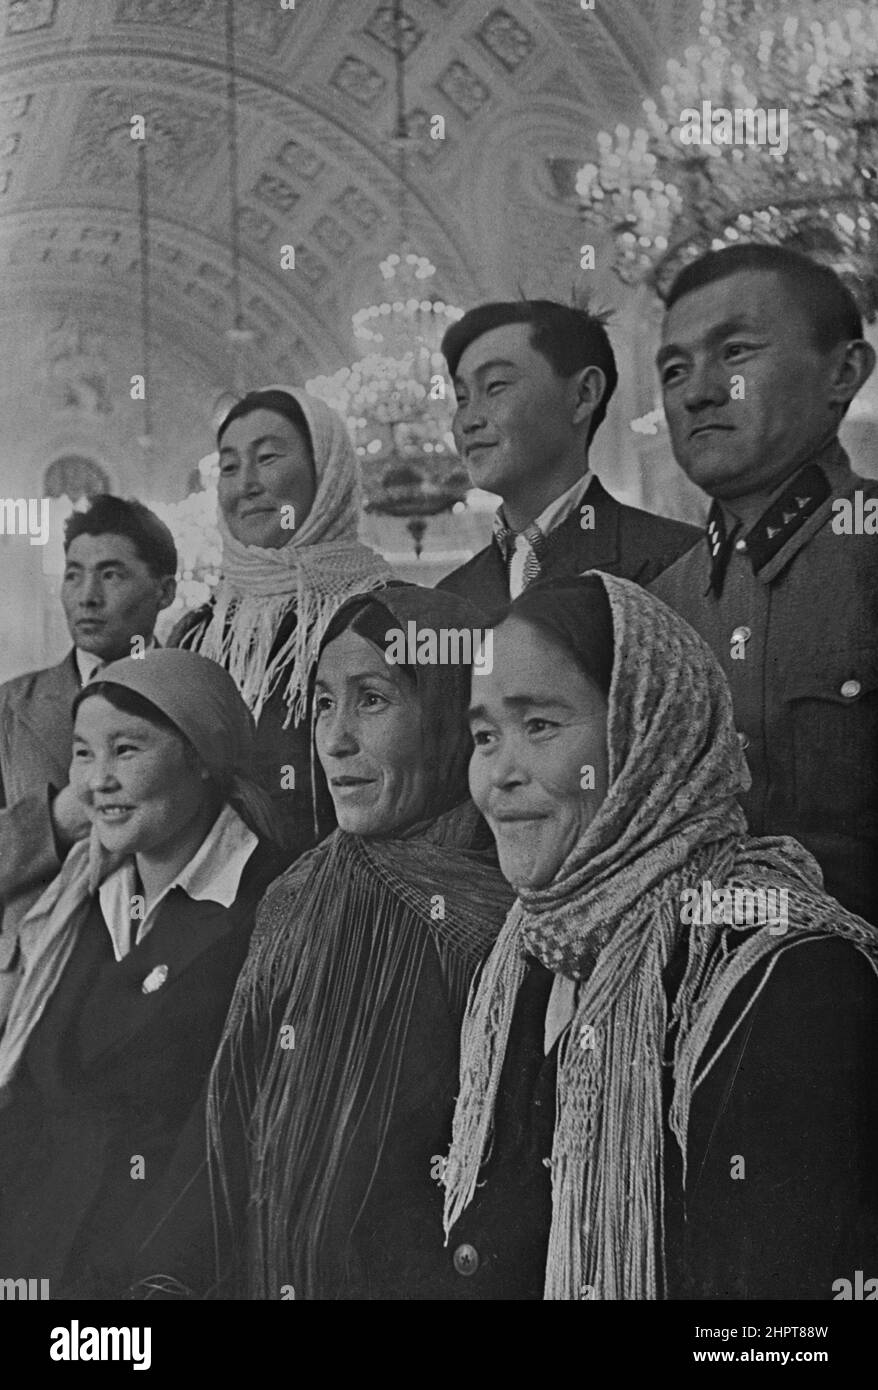 Foto d'epoca dei deputati al Soviet Supremo nel Cremlino. Mosca. URSS (Unione delle Repubbliche socialiste sovietiche). 1930-1940 Foto Stock